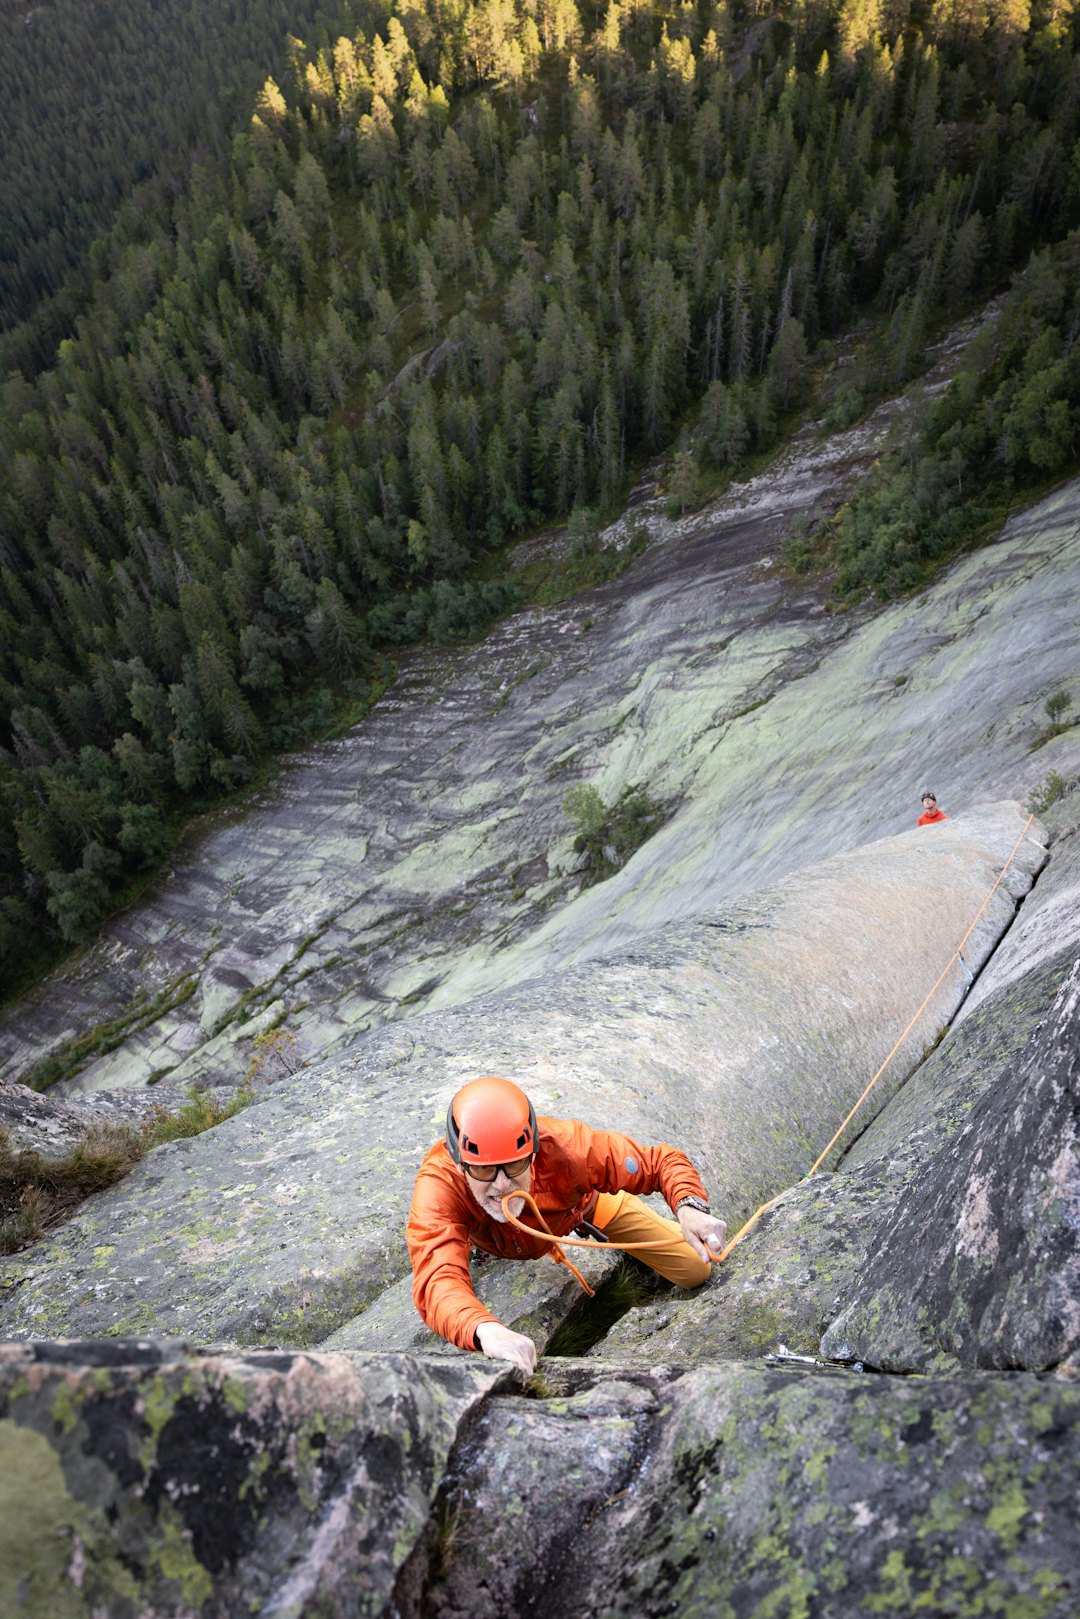 TRADNISSE: Etter å ha nådd toppen firte Jo Nesbø seg ned og ledet den siste taulengden. Foto: Hanna Jordan